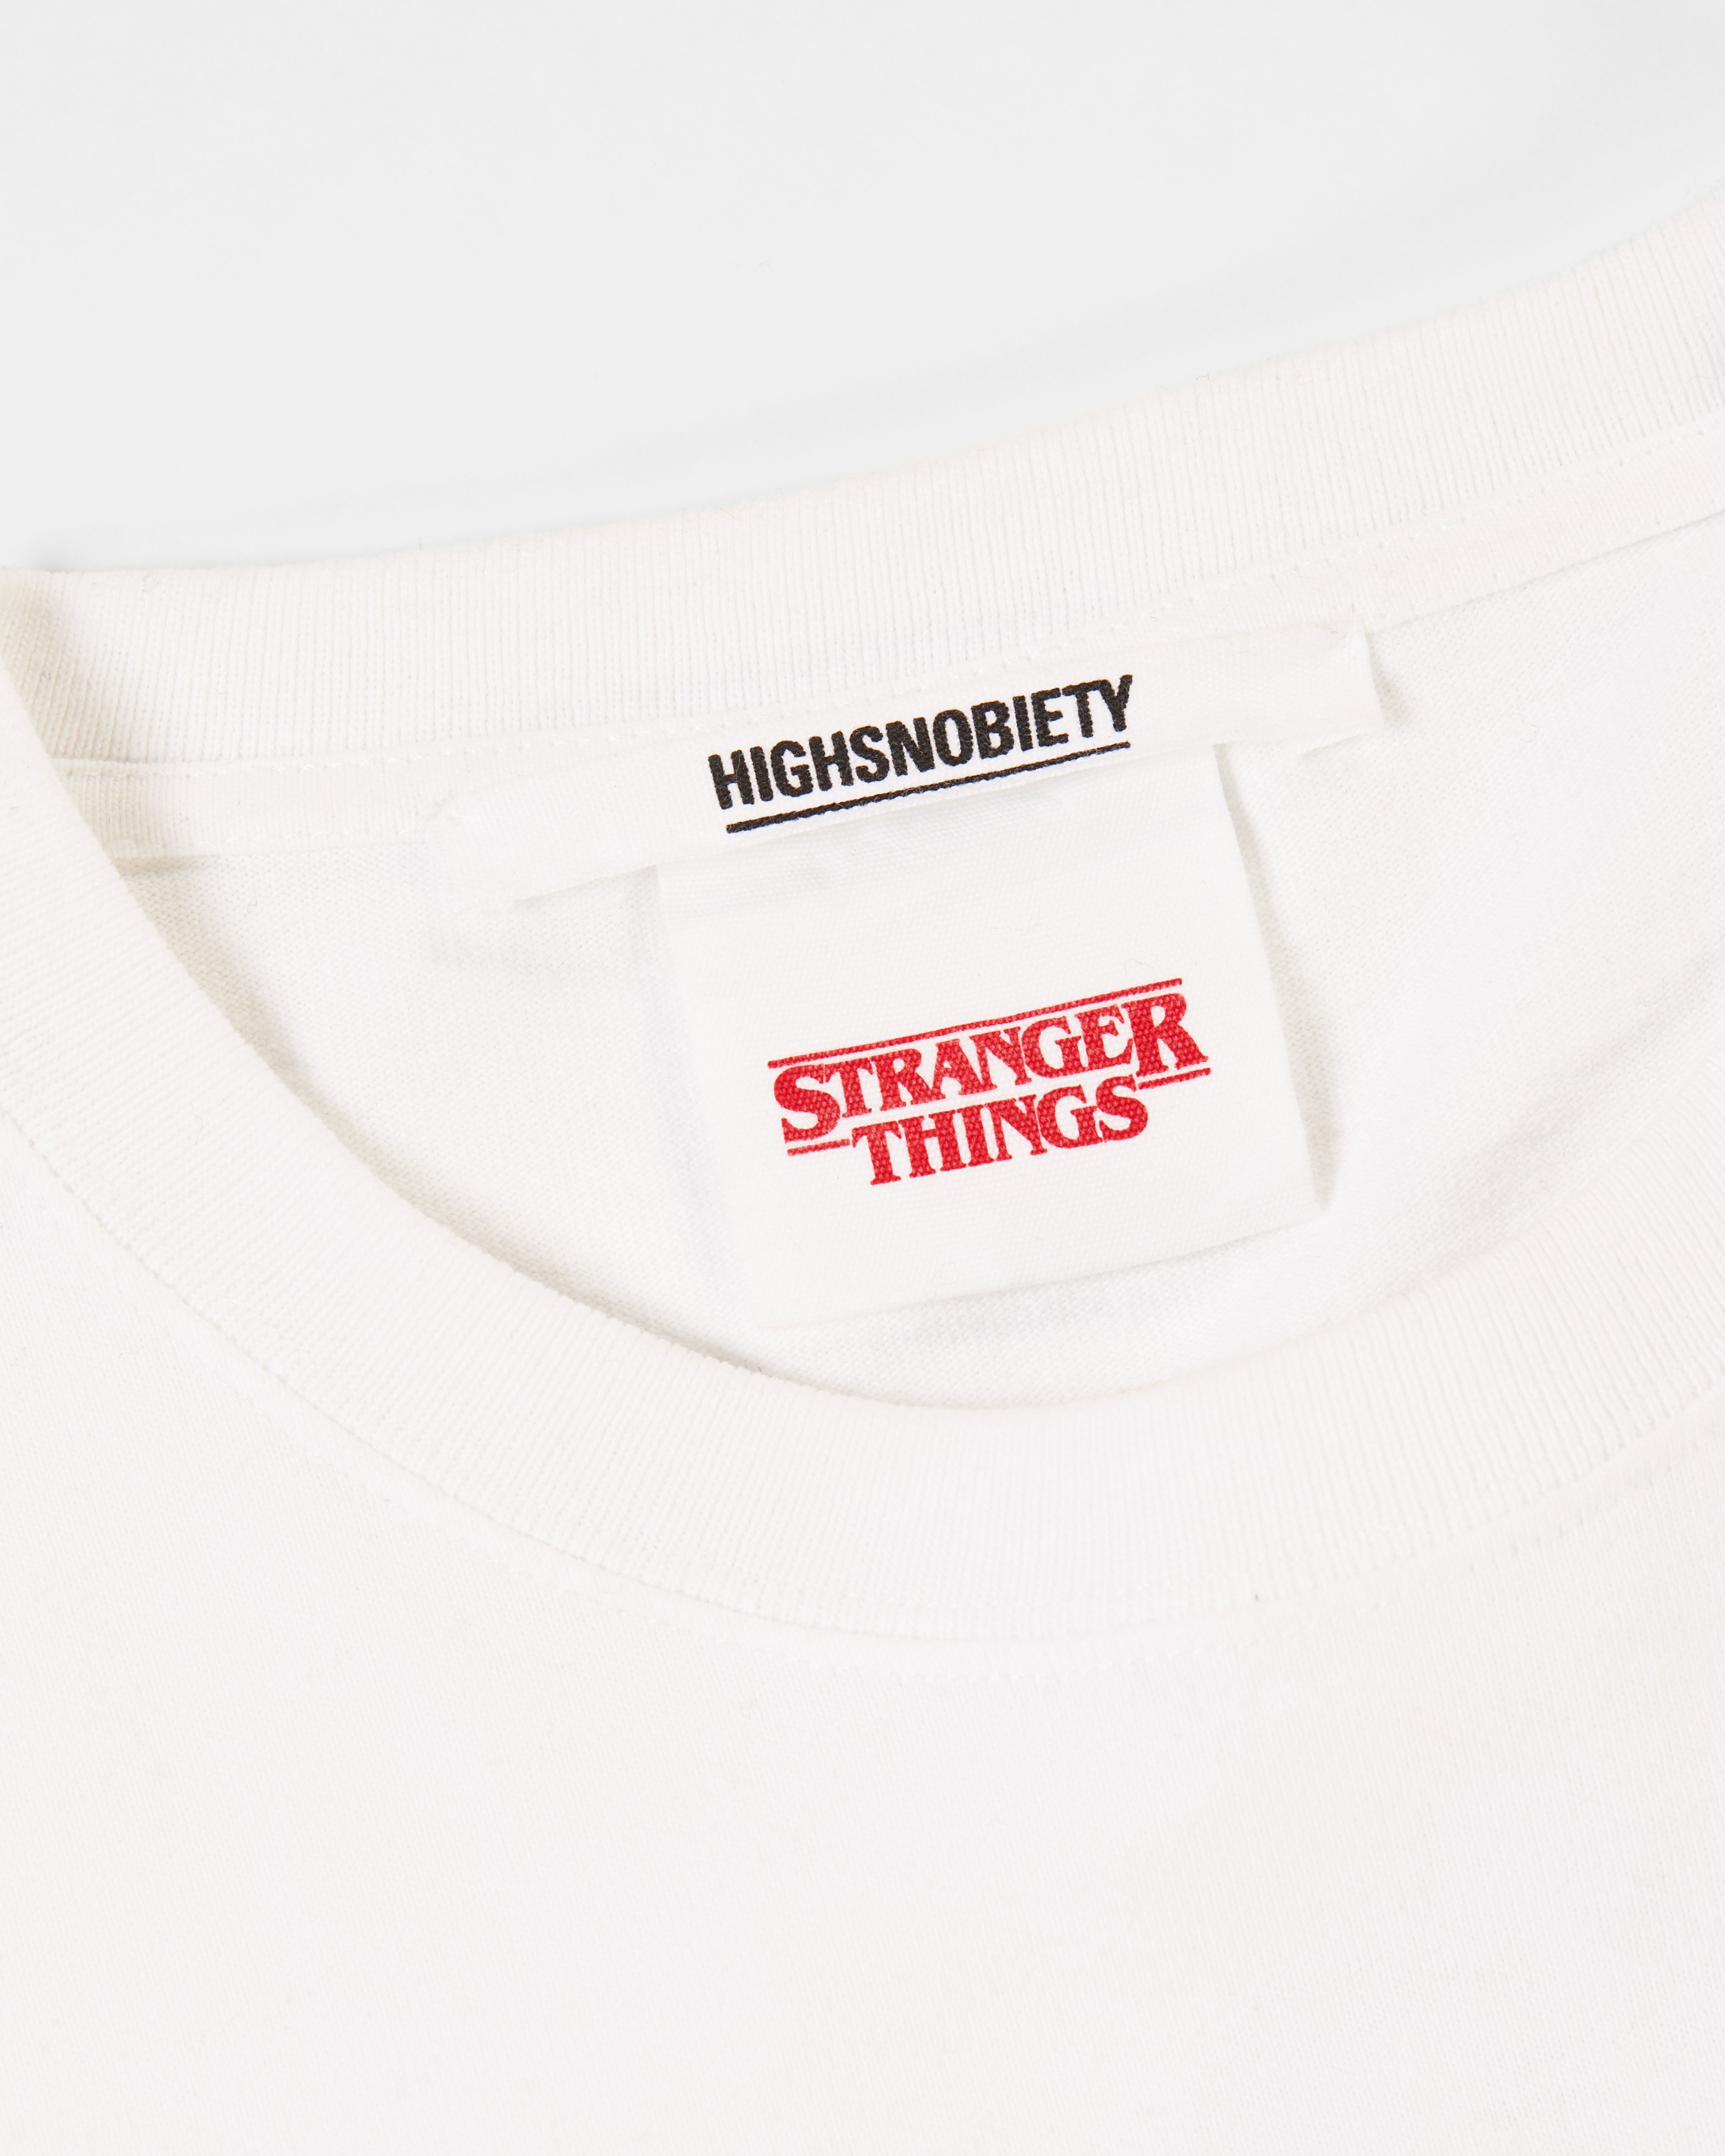 Highsnobiety - Stranger Things Episodes Long Sleeve White - Clothing - White - Image 6